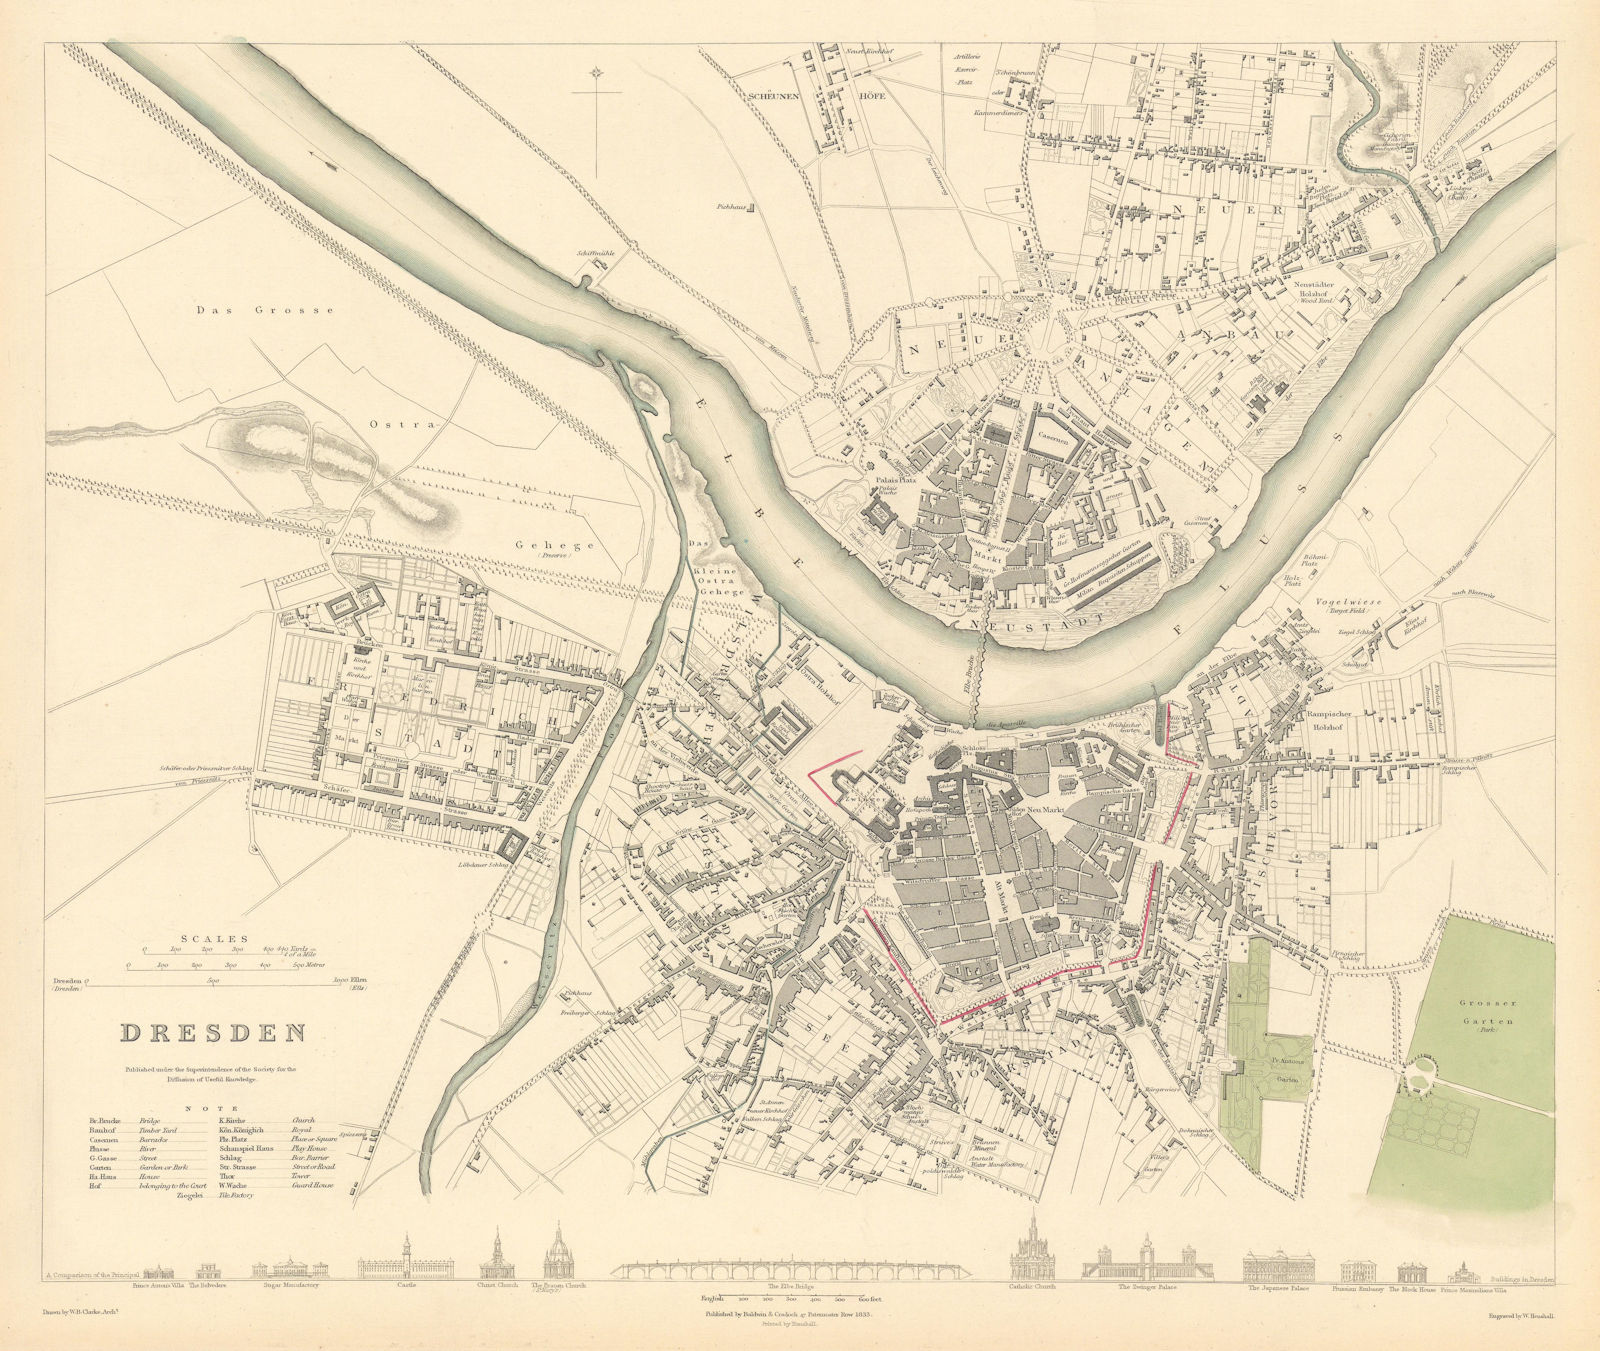 DRESDEN. Antique town city map plan. Original colour. SDUK 1844 old